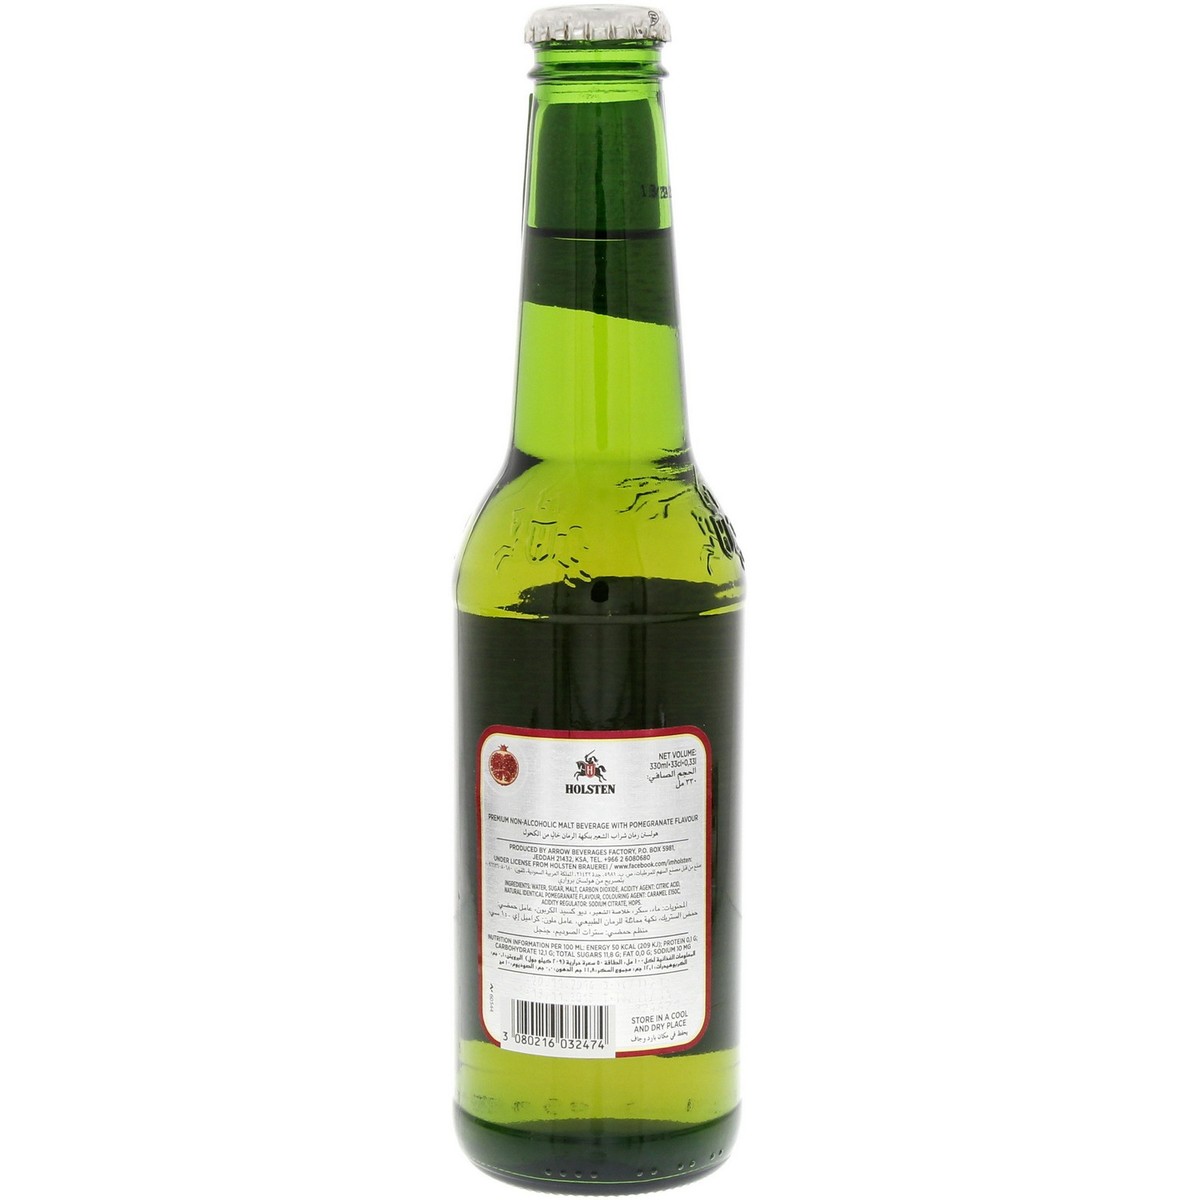 هولستن بيرة غير كحولية بنكهة الرمان 330 مل × 6 حبات